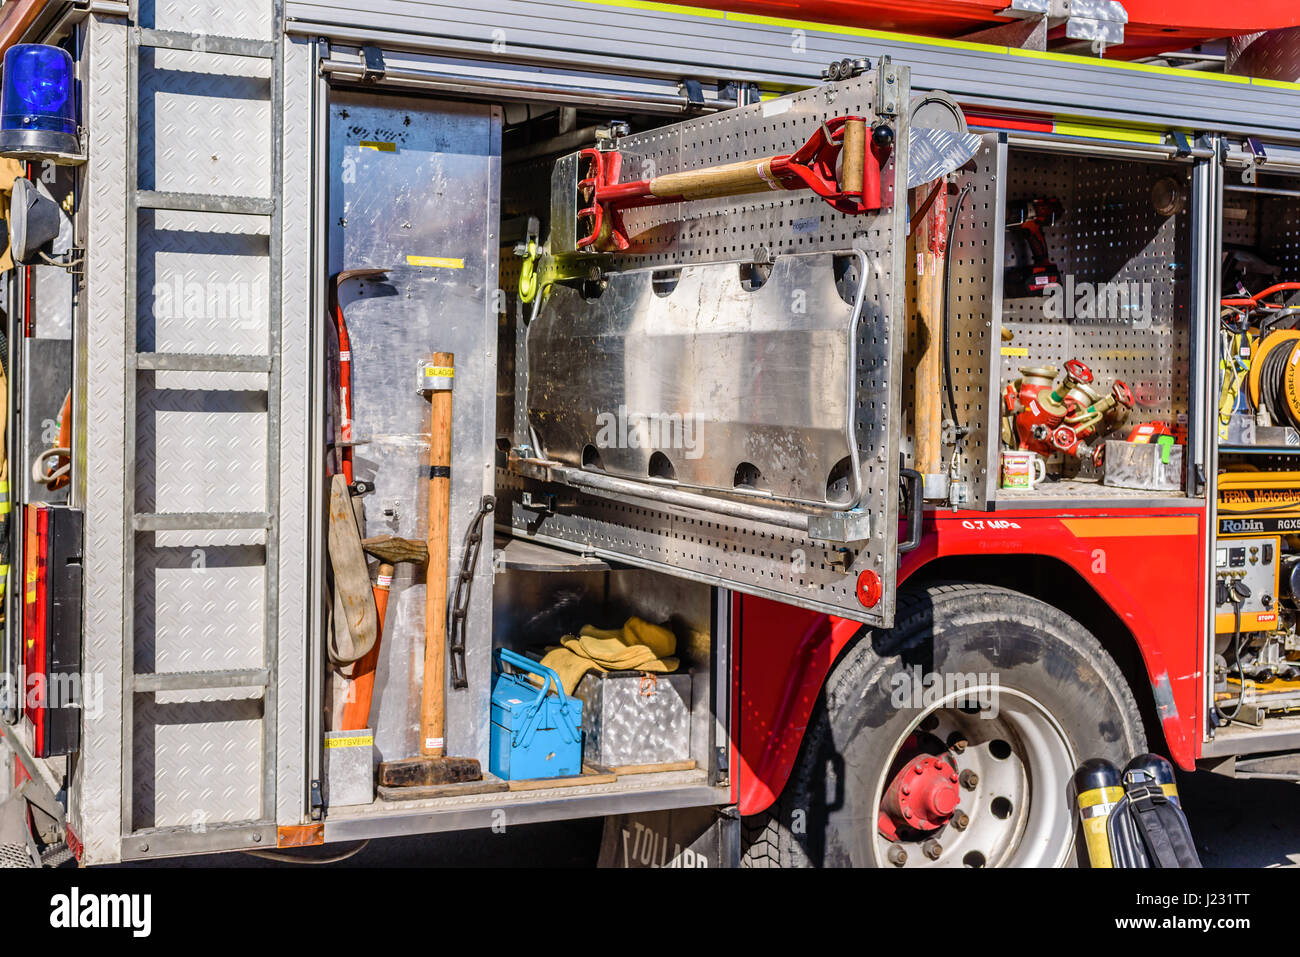 Brakne Hoby, Schweden - 22 April 2017: Dokumentation der öffentlichen Feuerwehr Lkw Präsentation. Stretcher und andere Werkzeuge sichtbar im Fahrzeug. Stockfoto